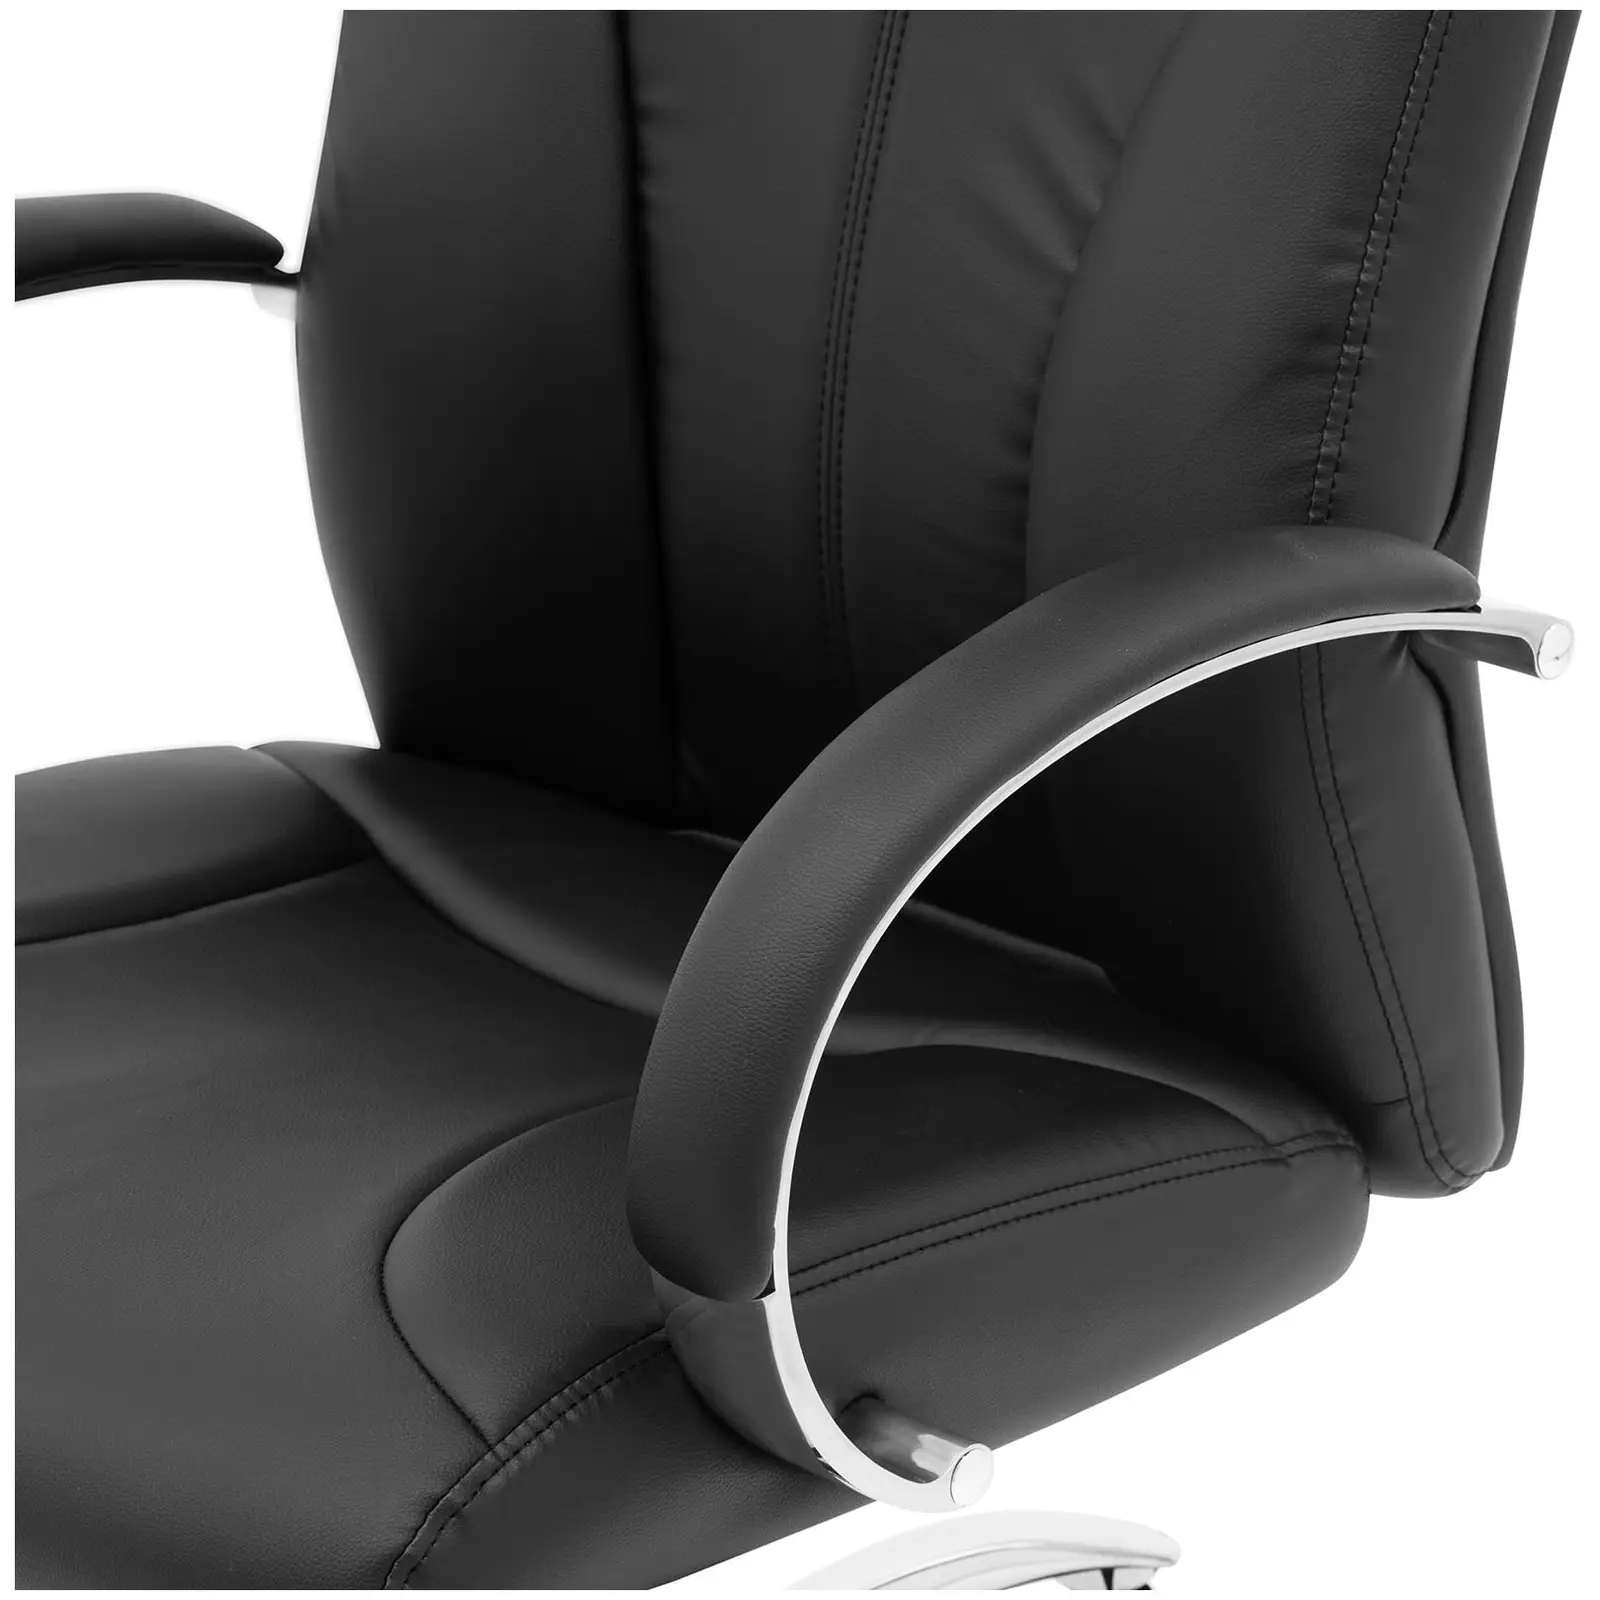 Kancelářská židle - opěradlo ze syntetické kůže - černá barva - 100 kg